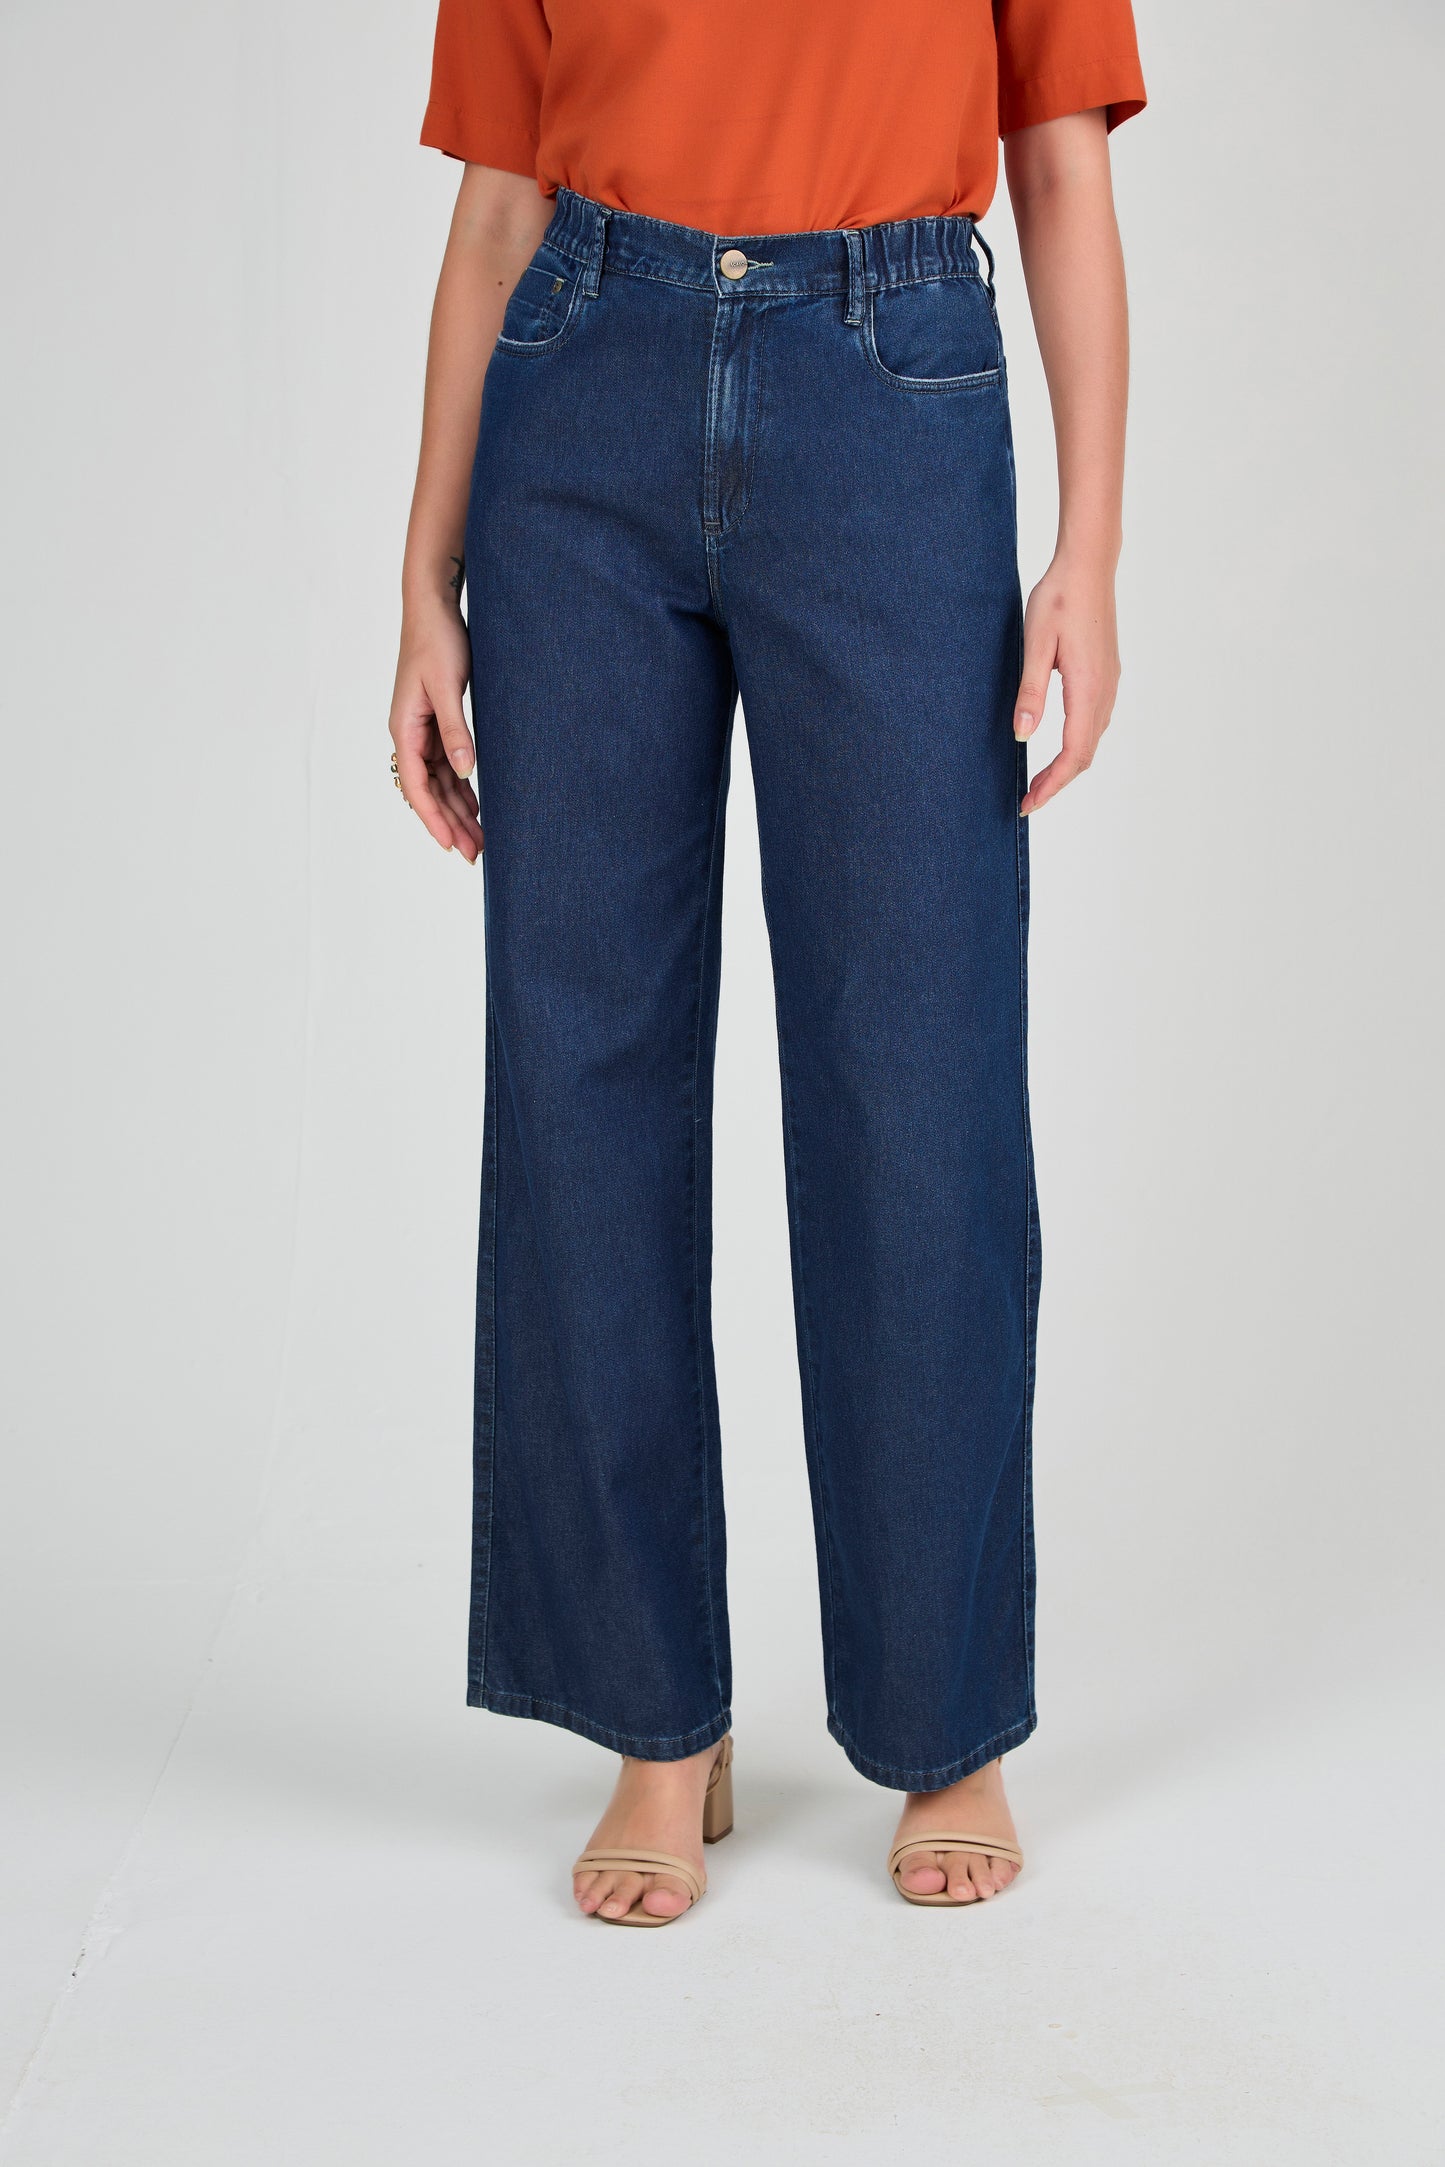 calça jeans wide leg cintura intermediária com detalhes nos bolsos